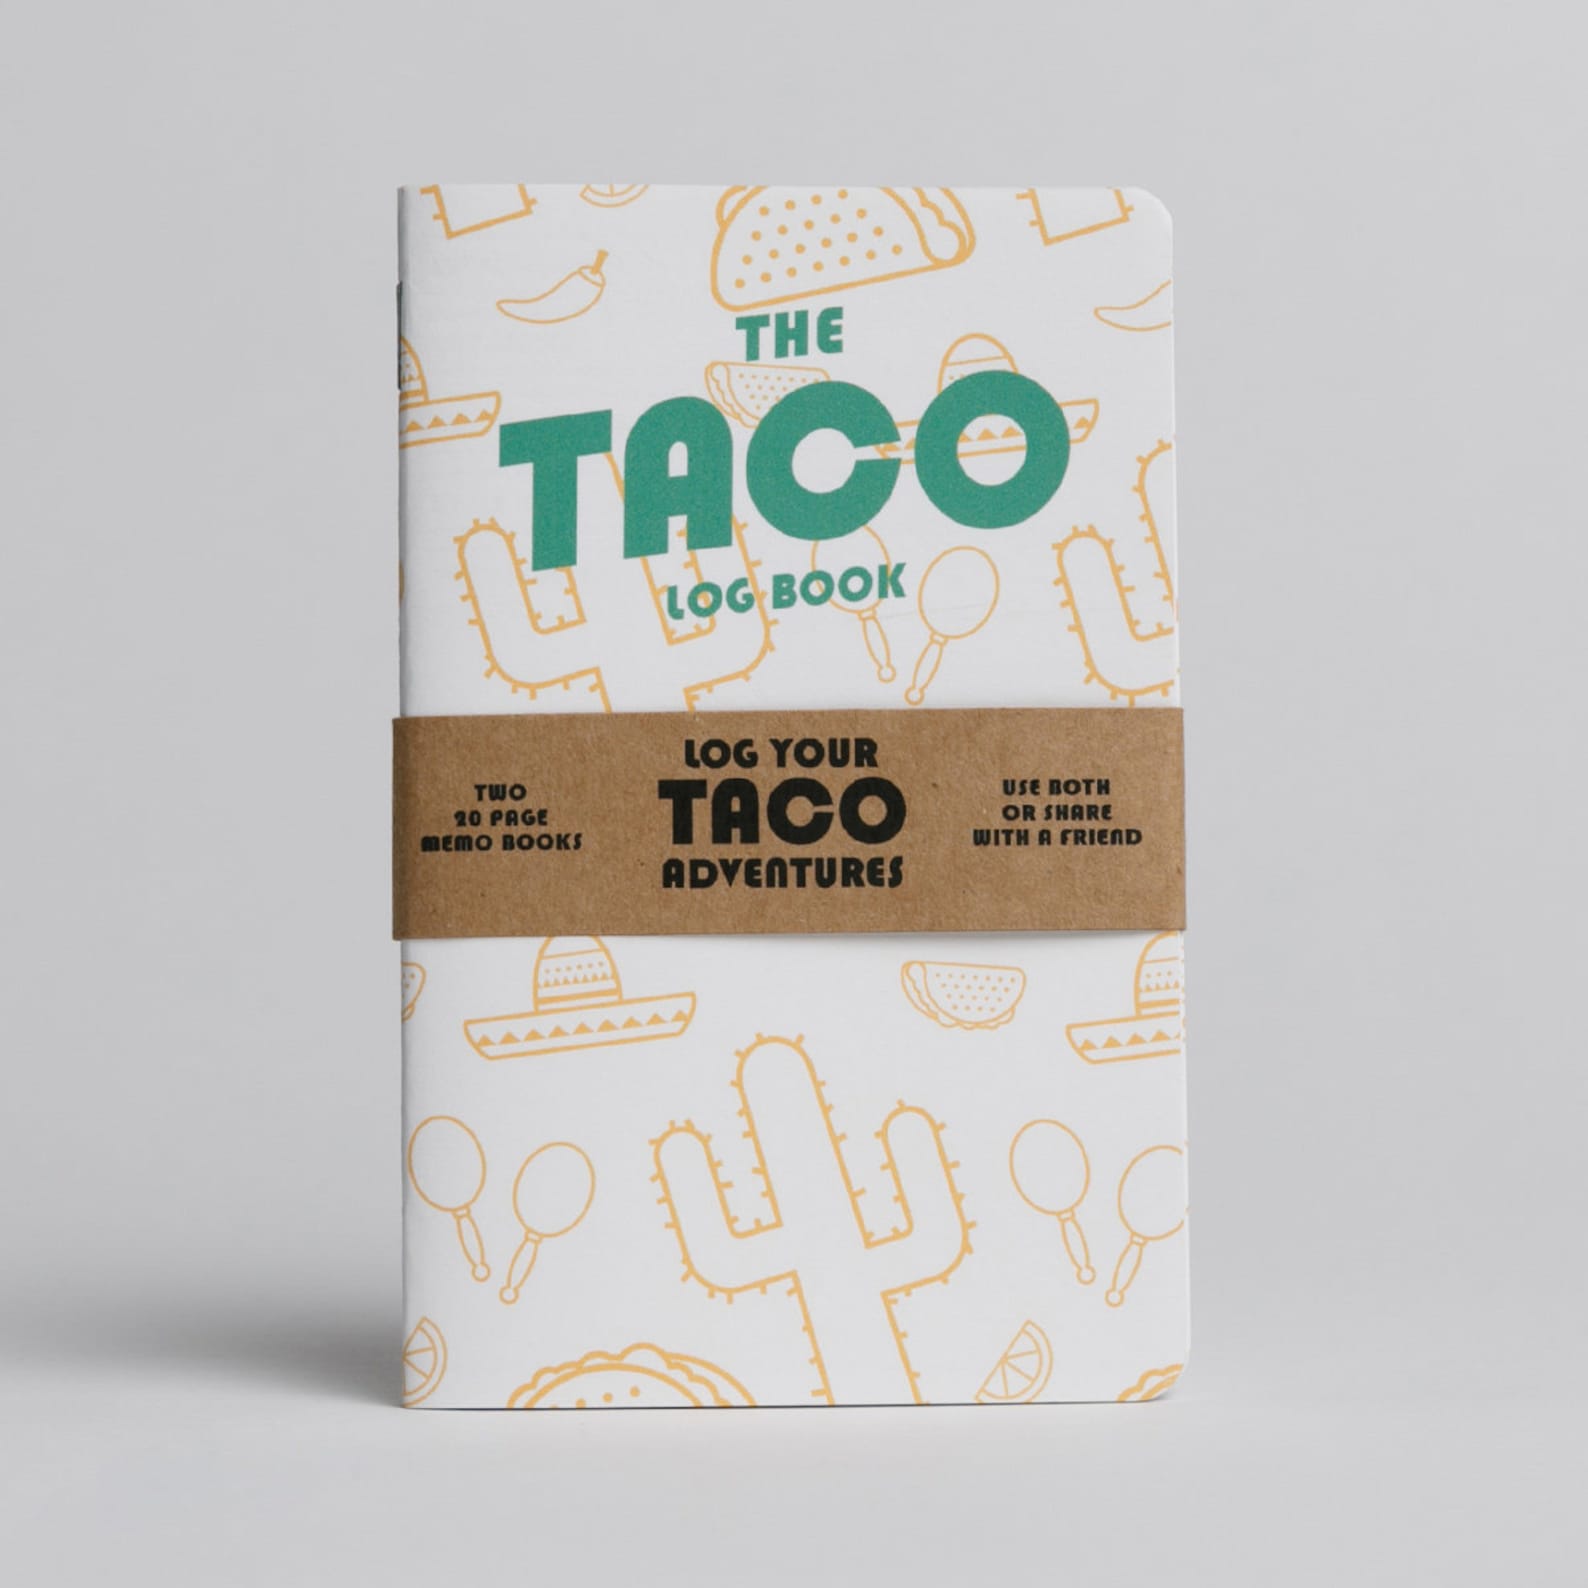 Taco shop image